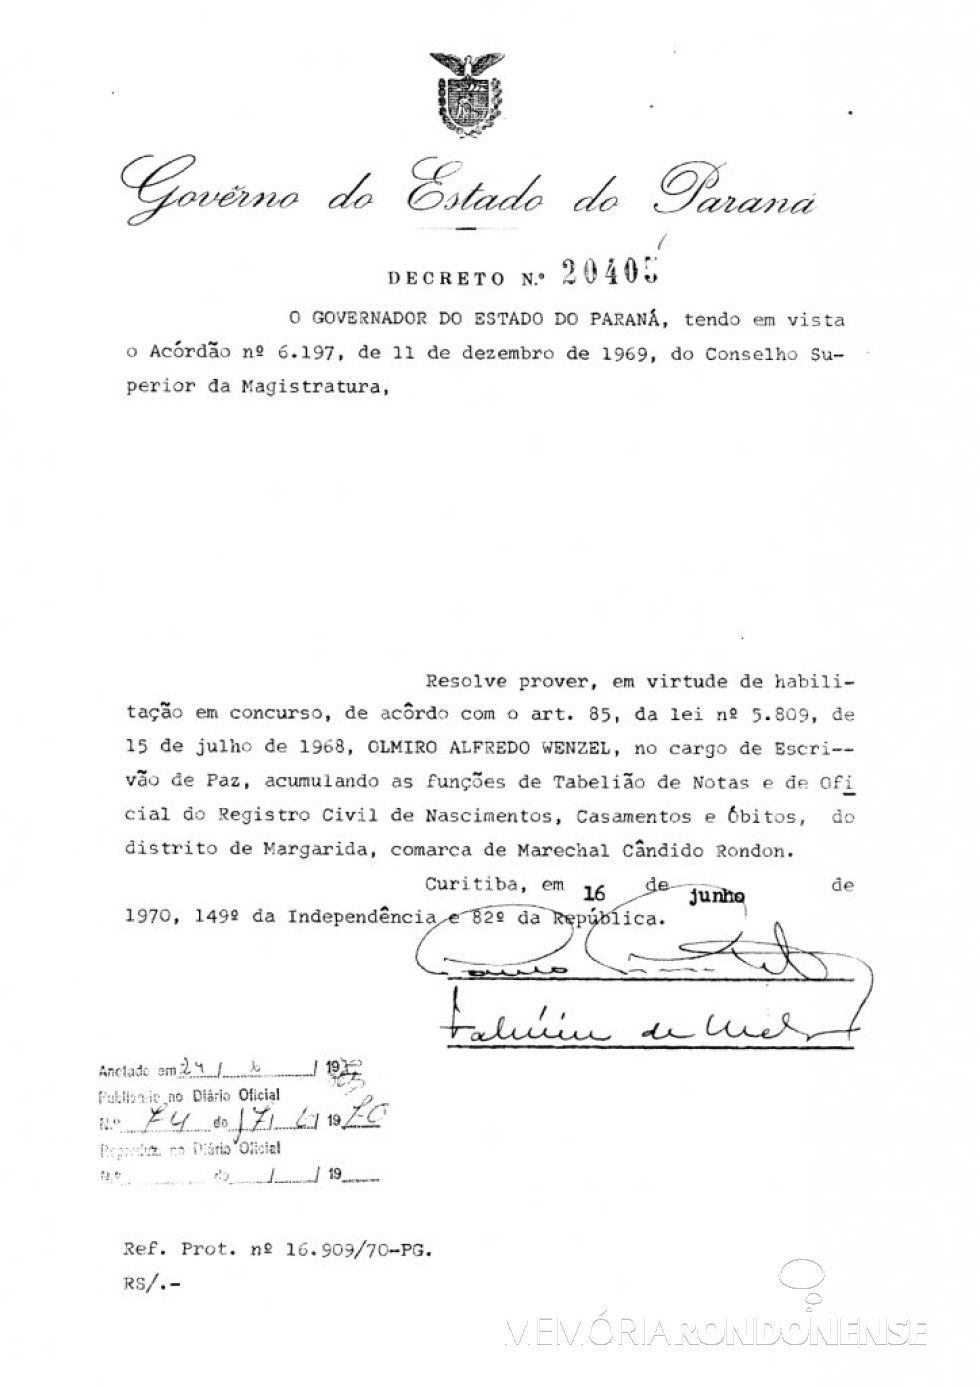 || Cópia do Decreto Estadual nº 20.405 que nomeou Olmiro Wenzel para as funções de cartorário no distrito rondonense de Margarida, em junho de 1970.
Imagem: Acervo Arquivo Público do Paraná - FOTO 3 - 